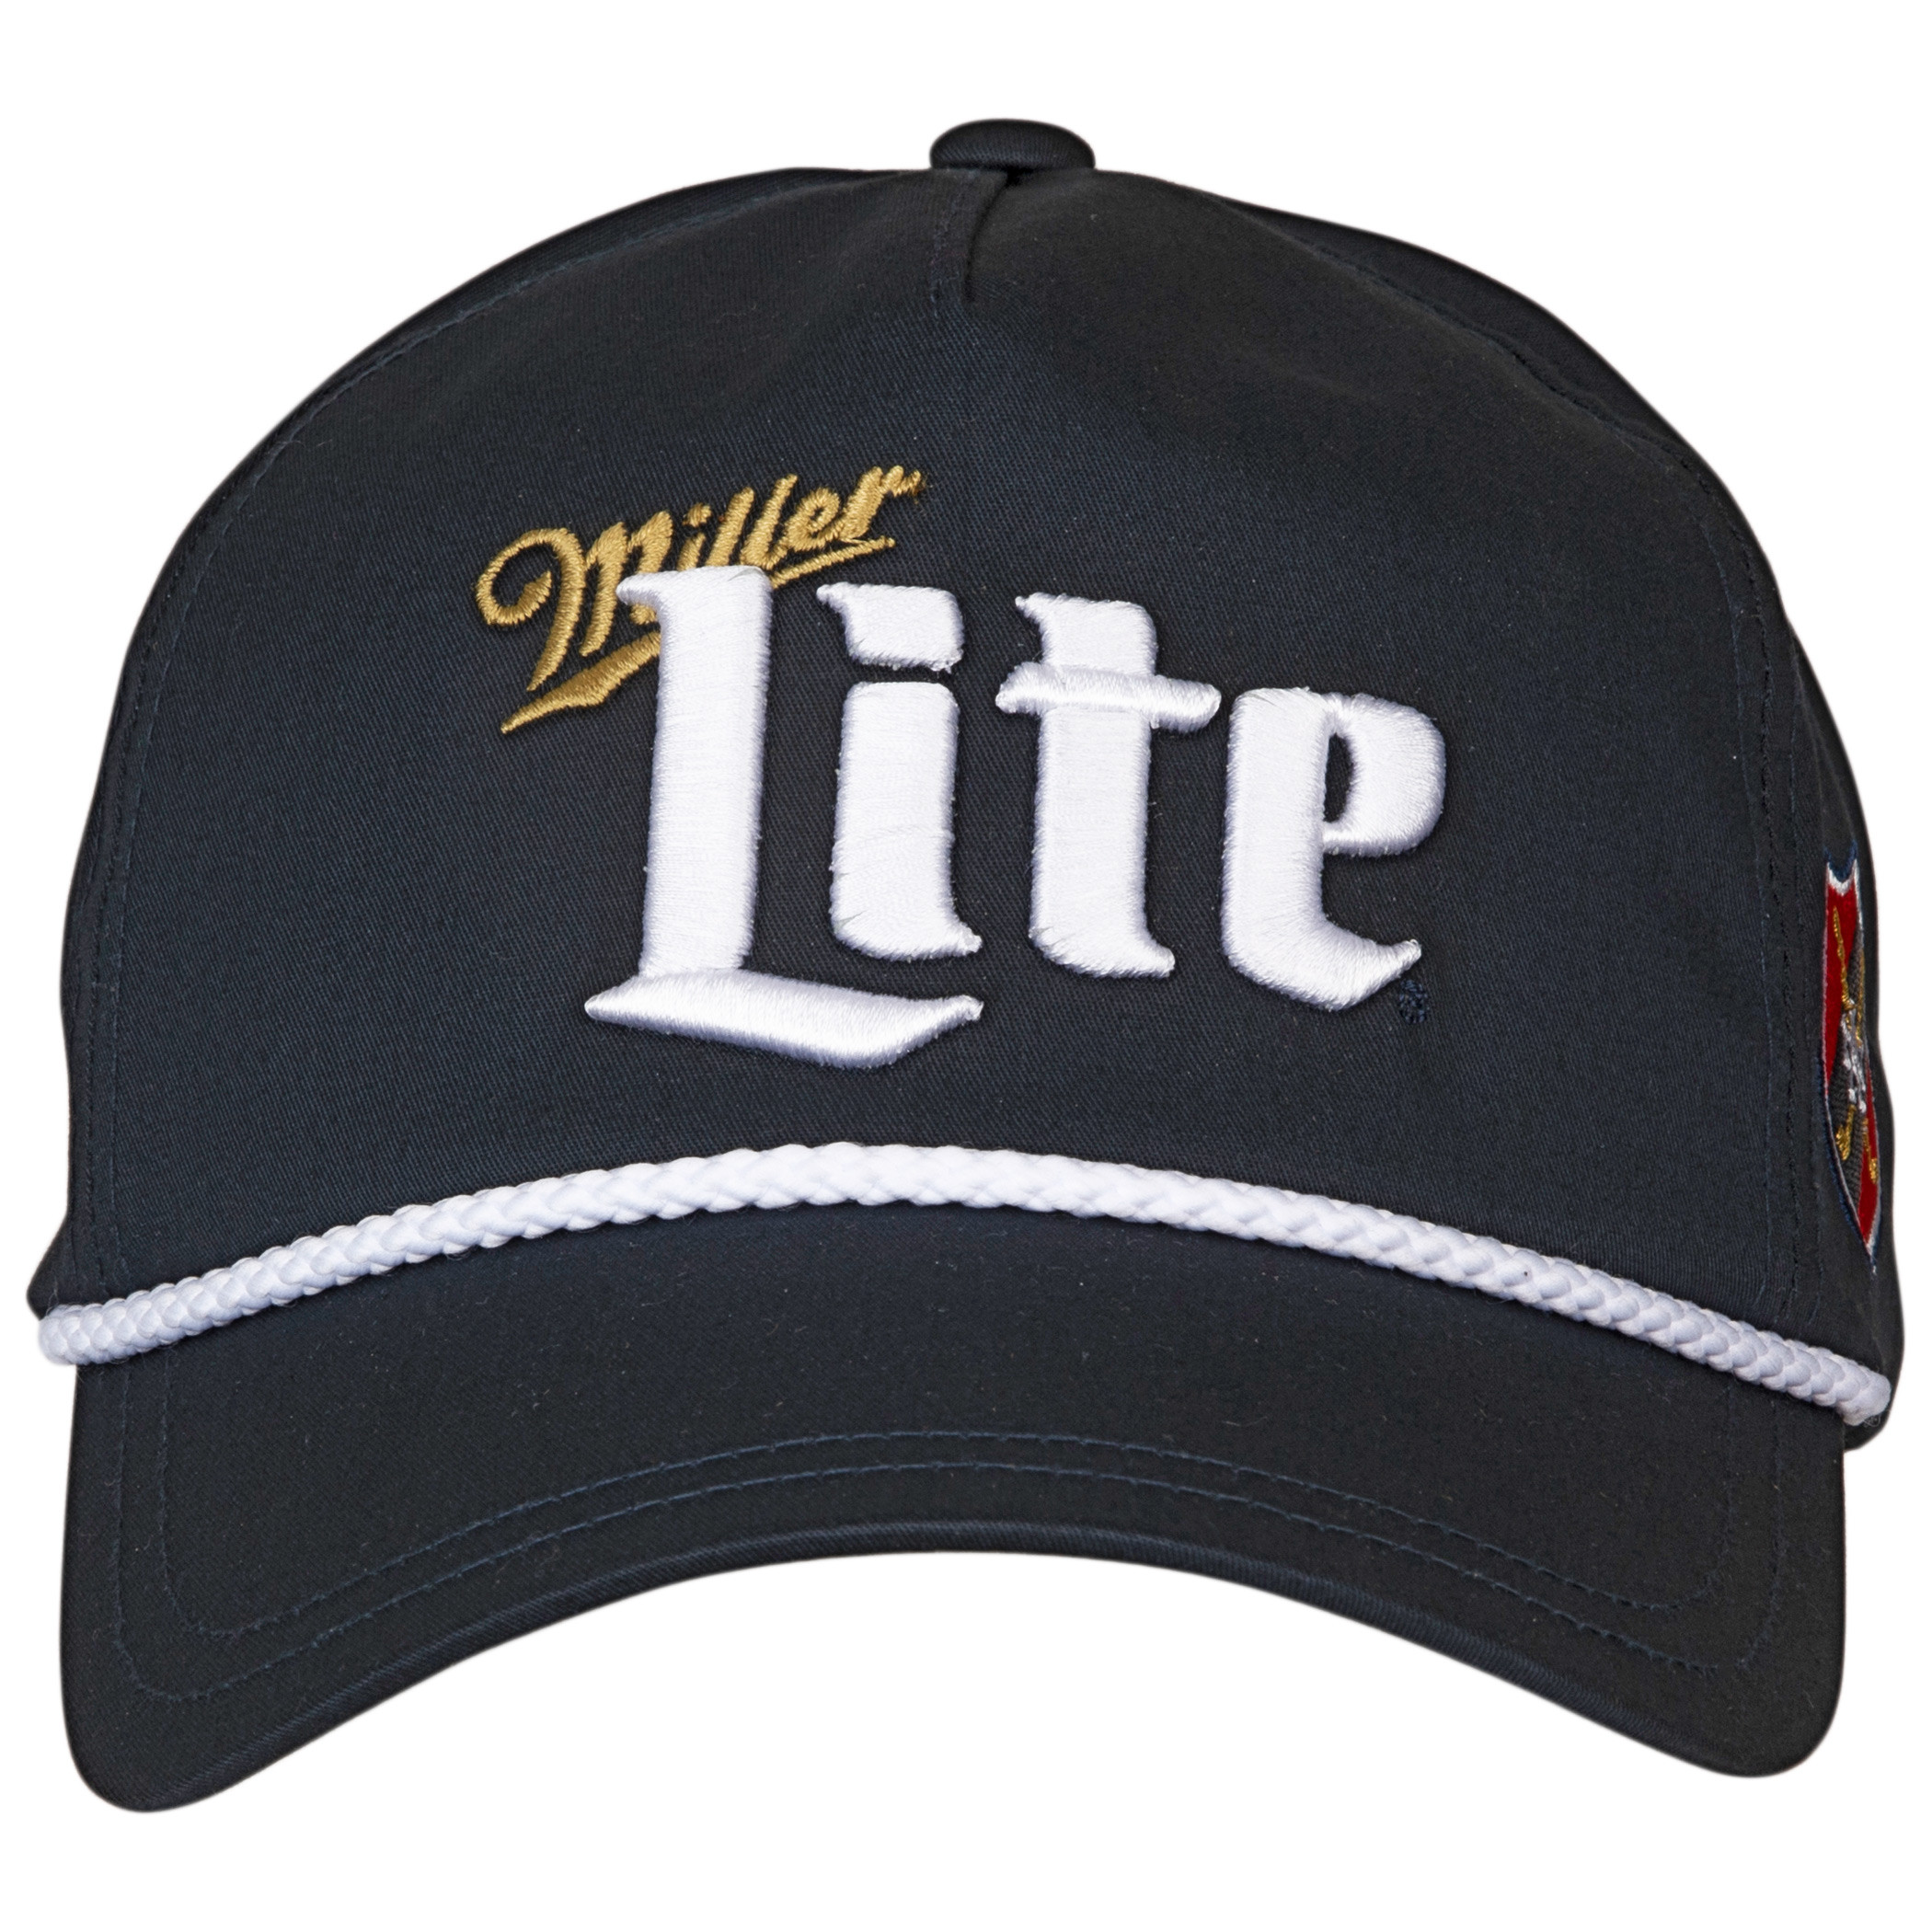 Miller Lite Roped Brim Adjustable Snapback Hat